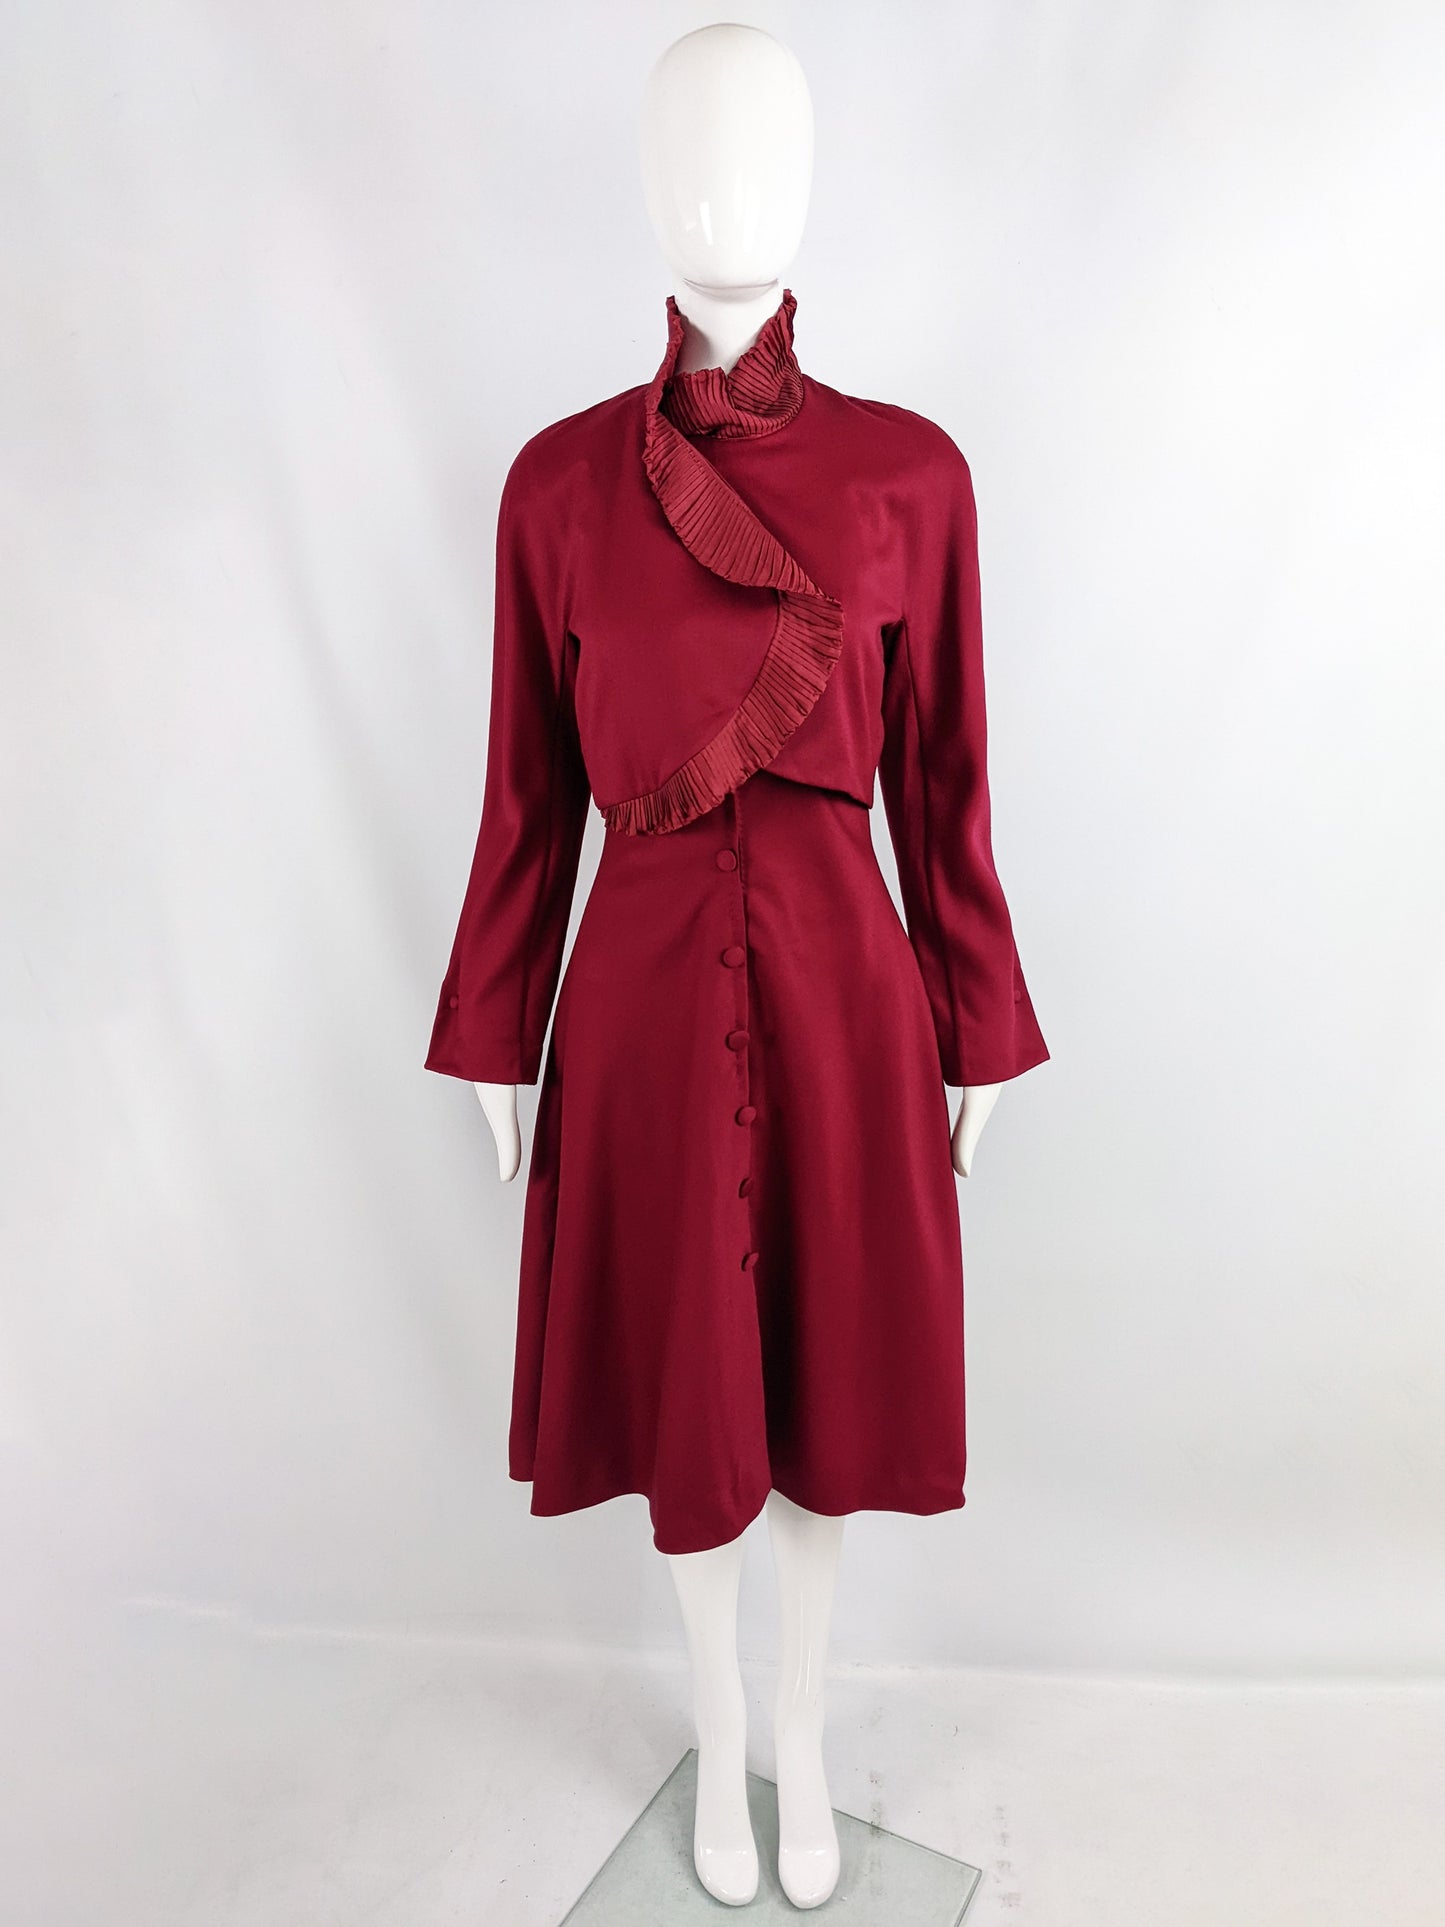 Eli Colaj Vintage Wine Red Wool & Pleated Ruffle Taffeta Collar Dress, 1980s